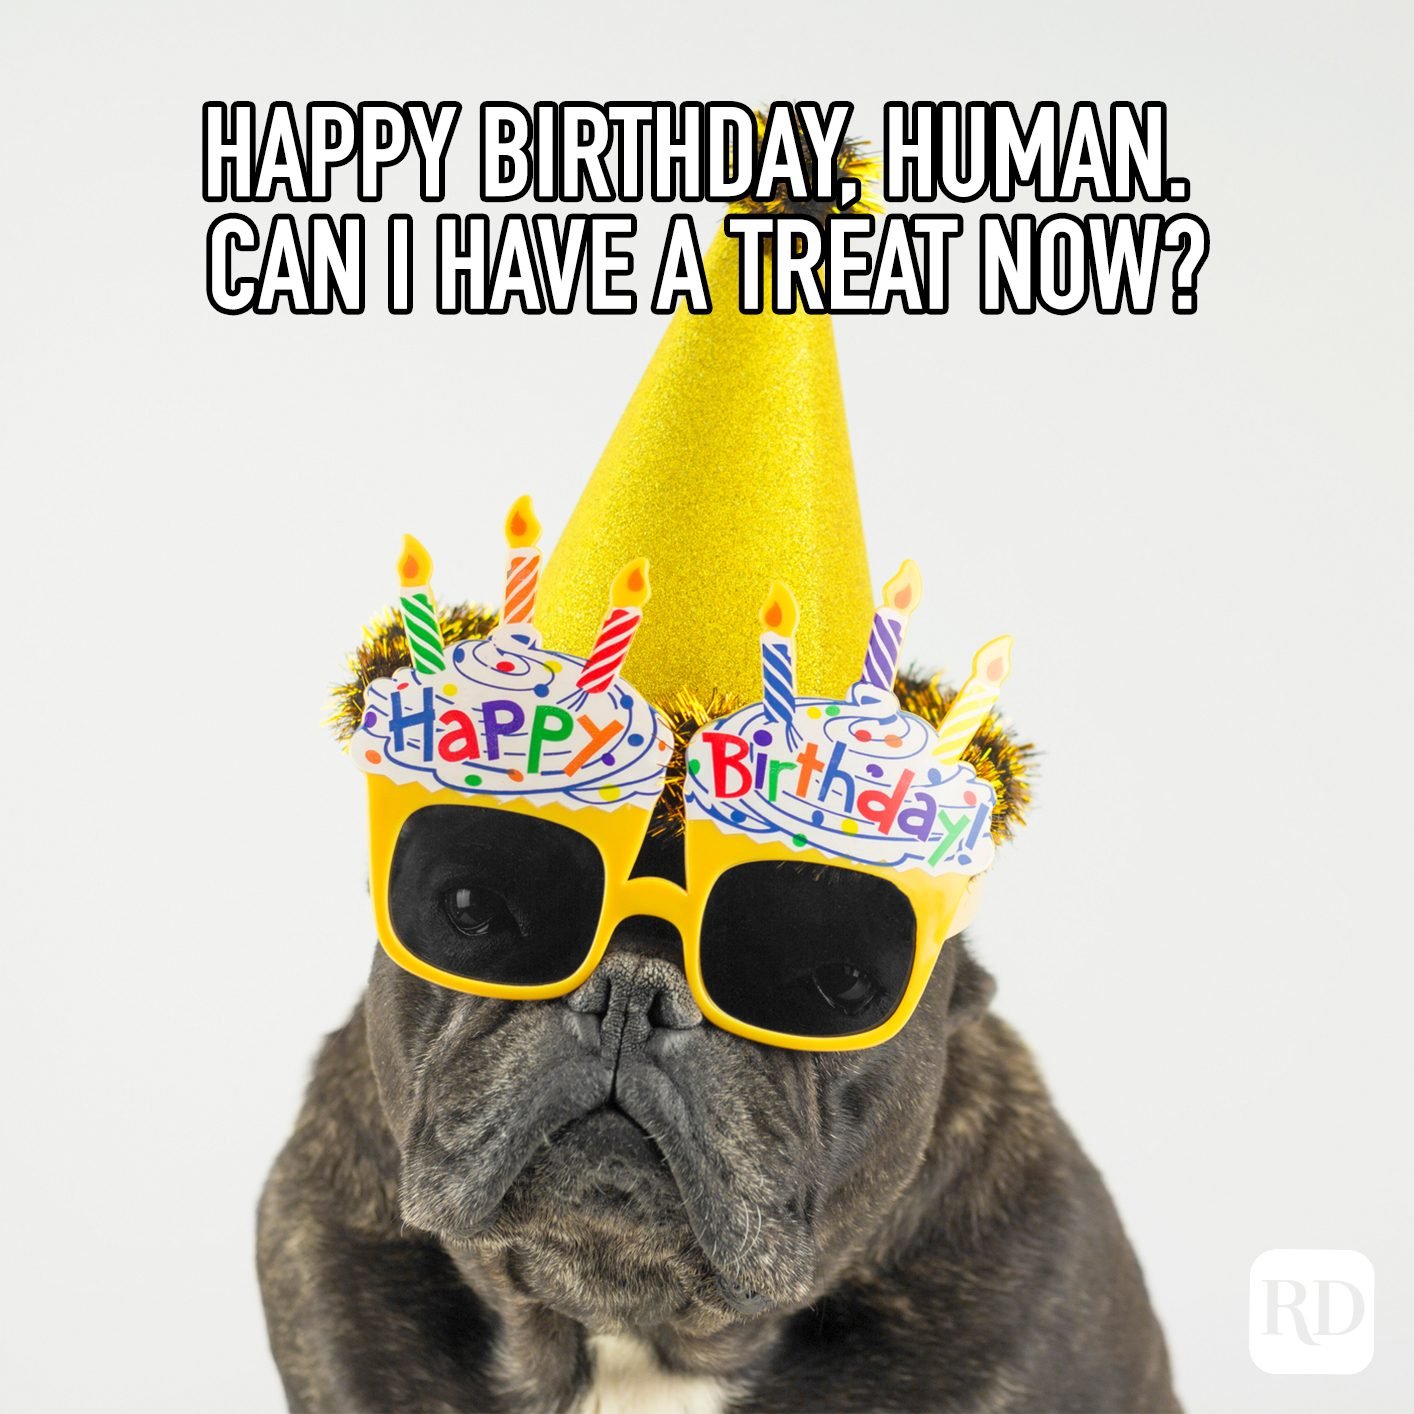 Coronavirus Birthday Memes That'll Make Your Celebration Better